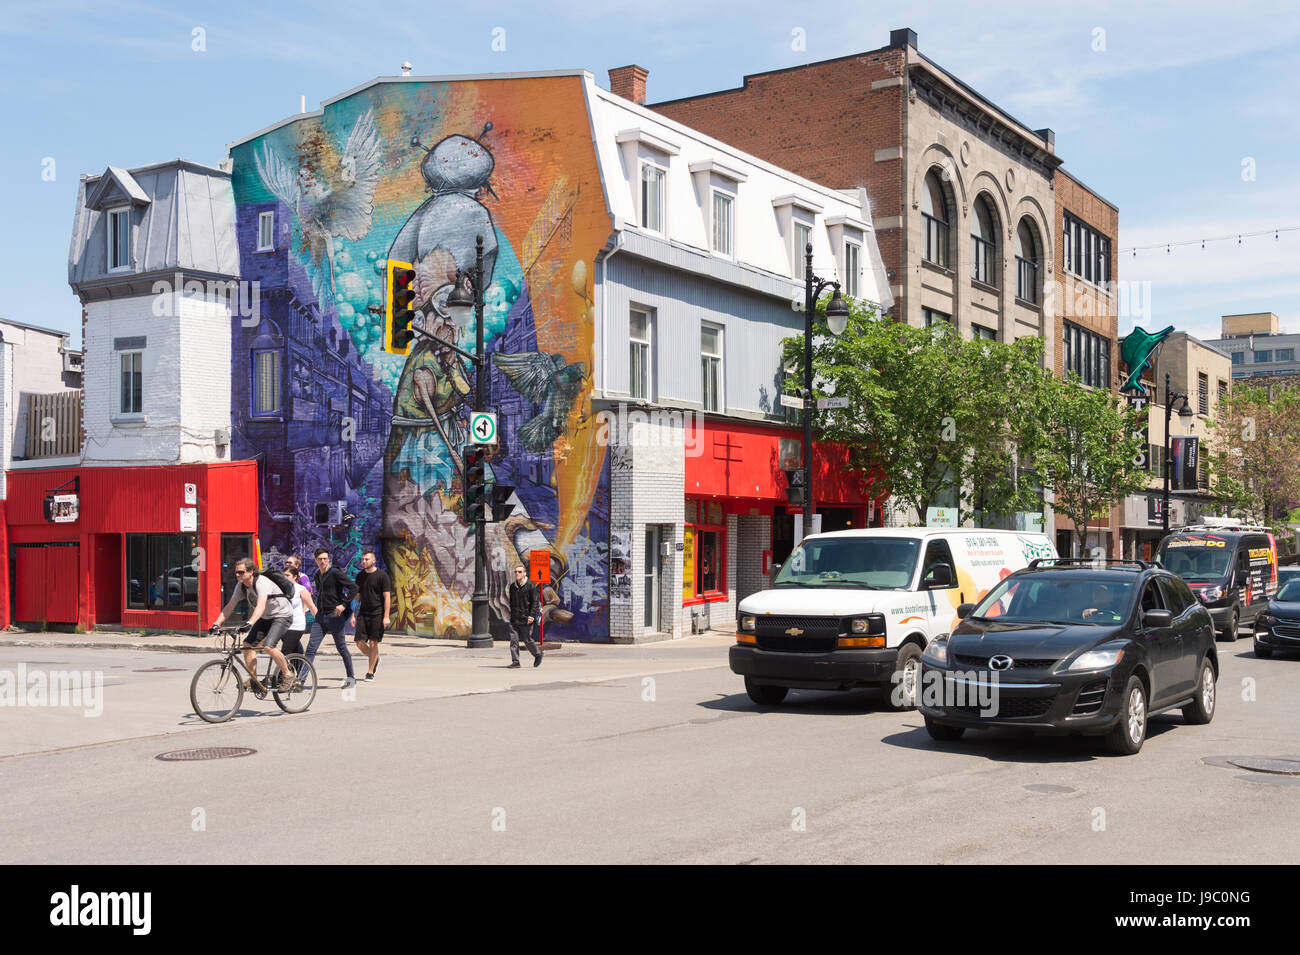 Montreal, Canada - 31 May 2017: Graffiti street art murals along Boulevard Saint-Laurent Stock Photo